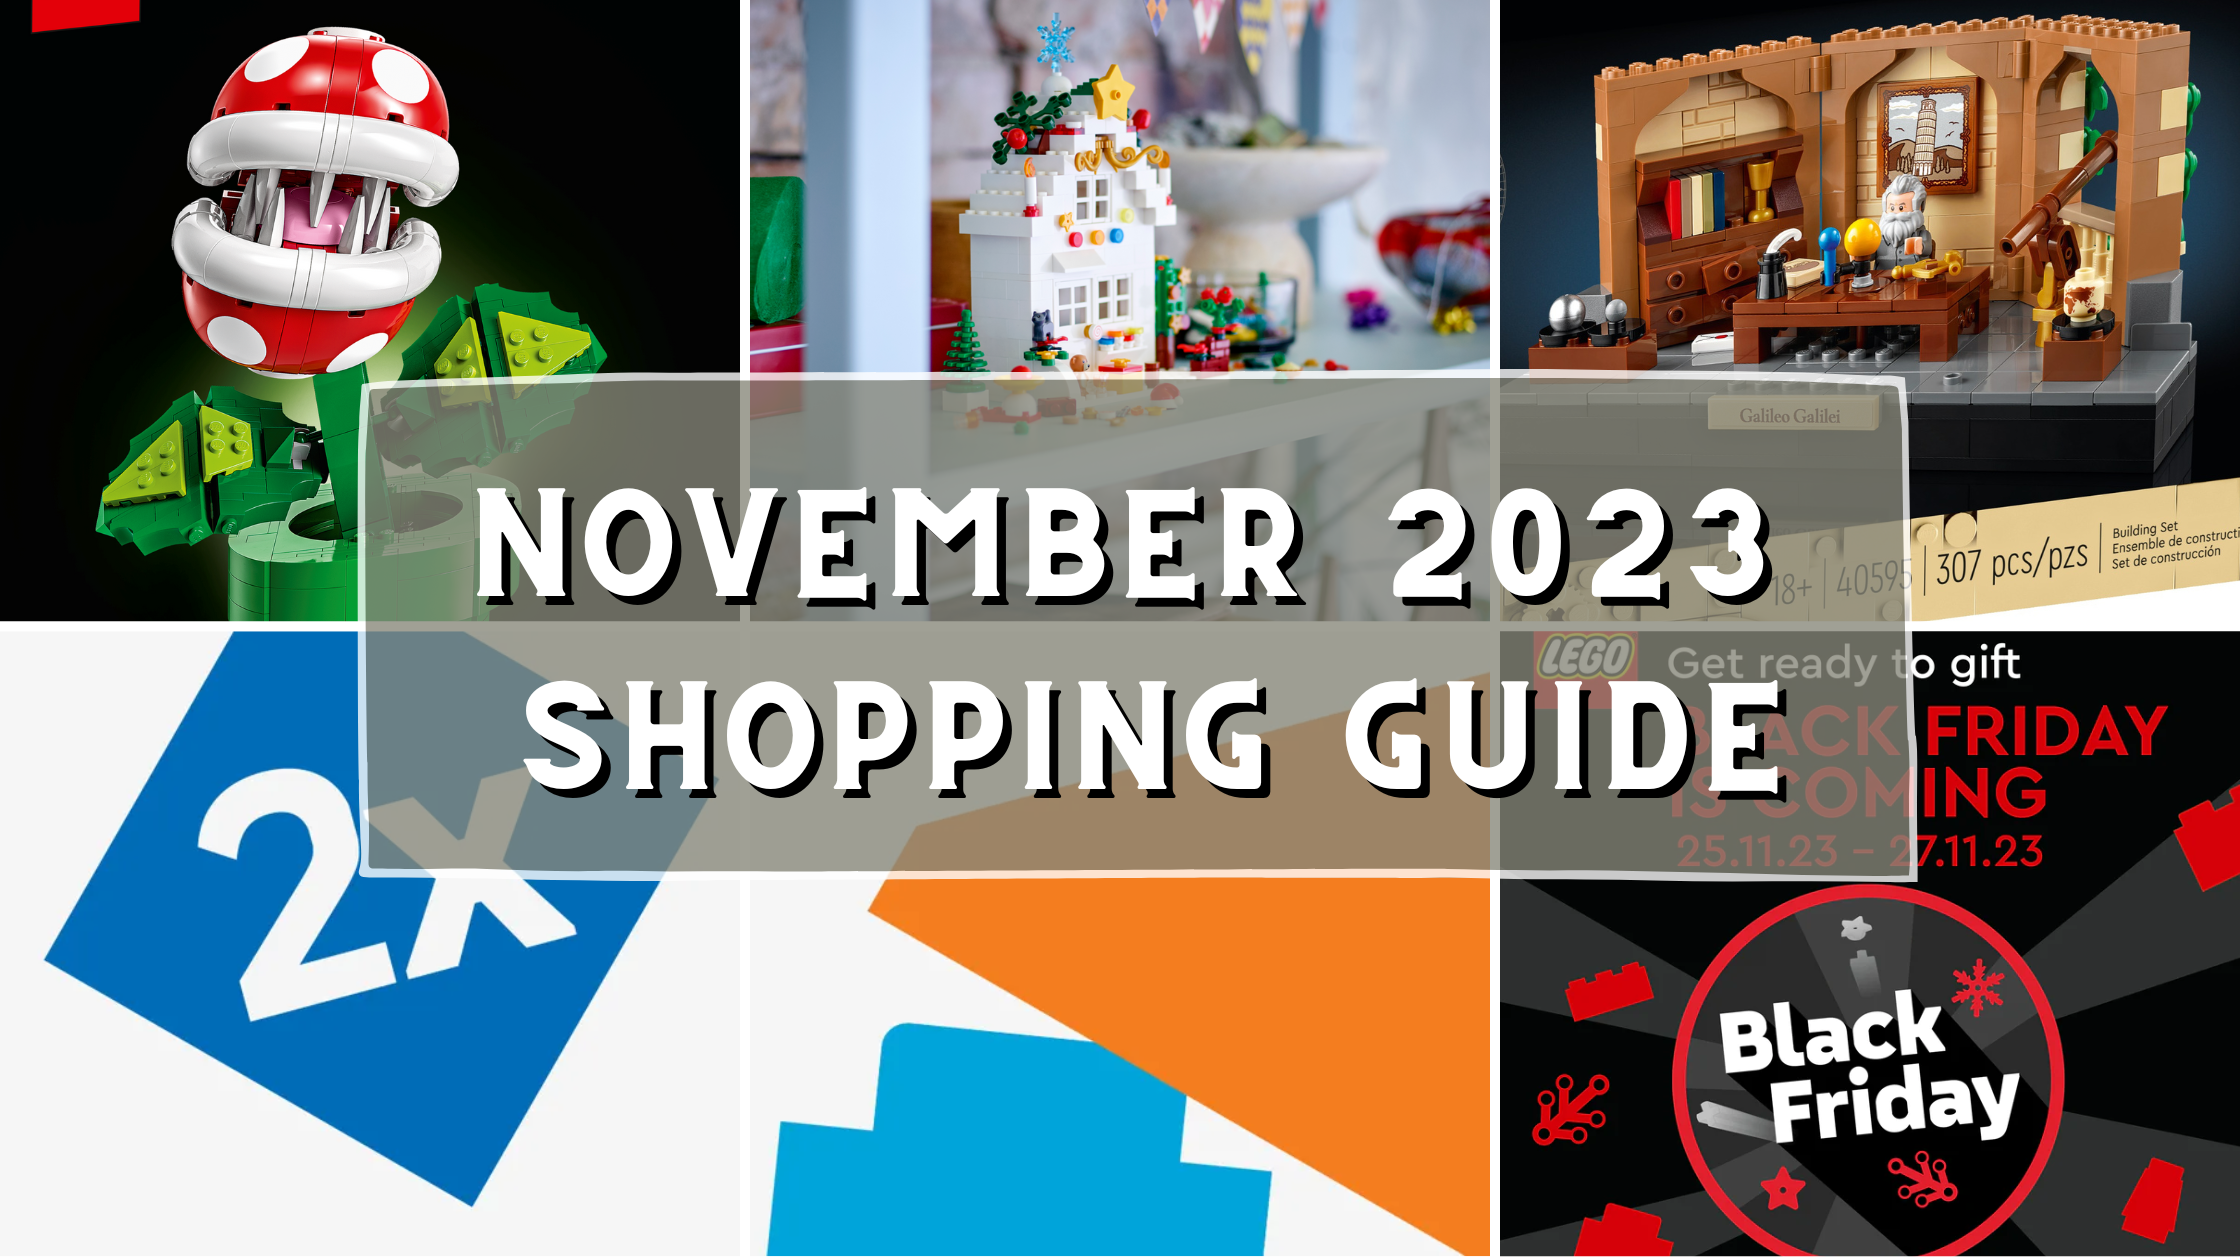 https://jaysbrickblog.com/wp-content/uploads/2023/11/LEGO-November-2023-Shopping-Guide.png